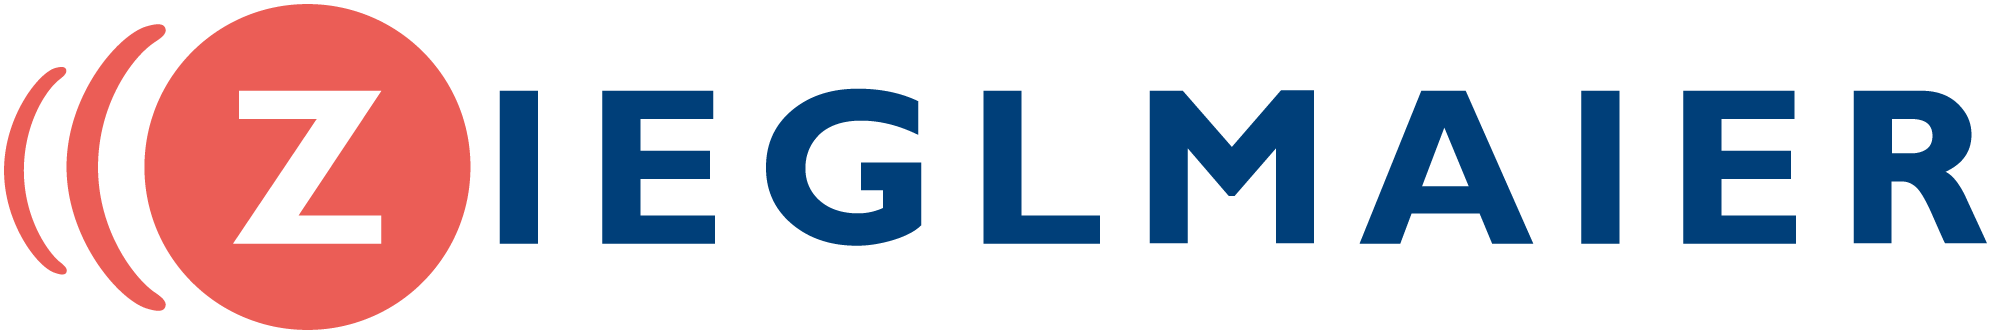 Hörgeräte Zieglmaier Logo